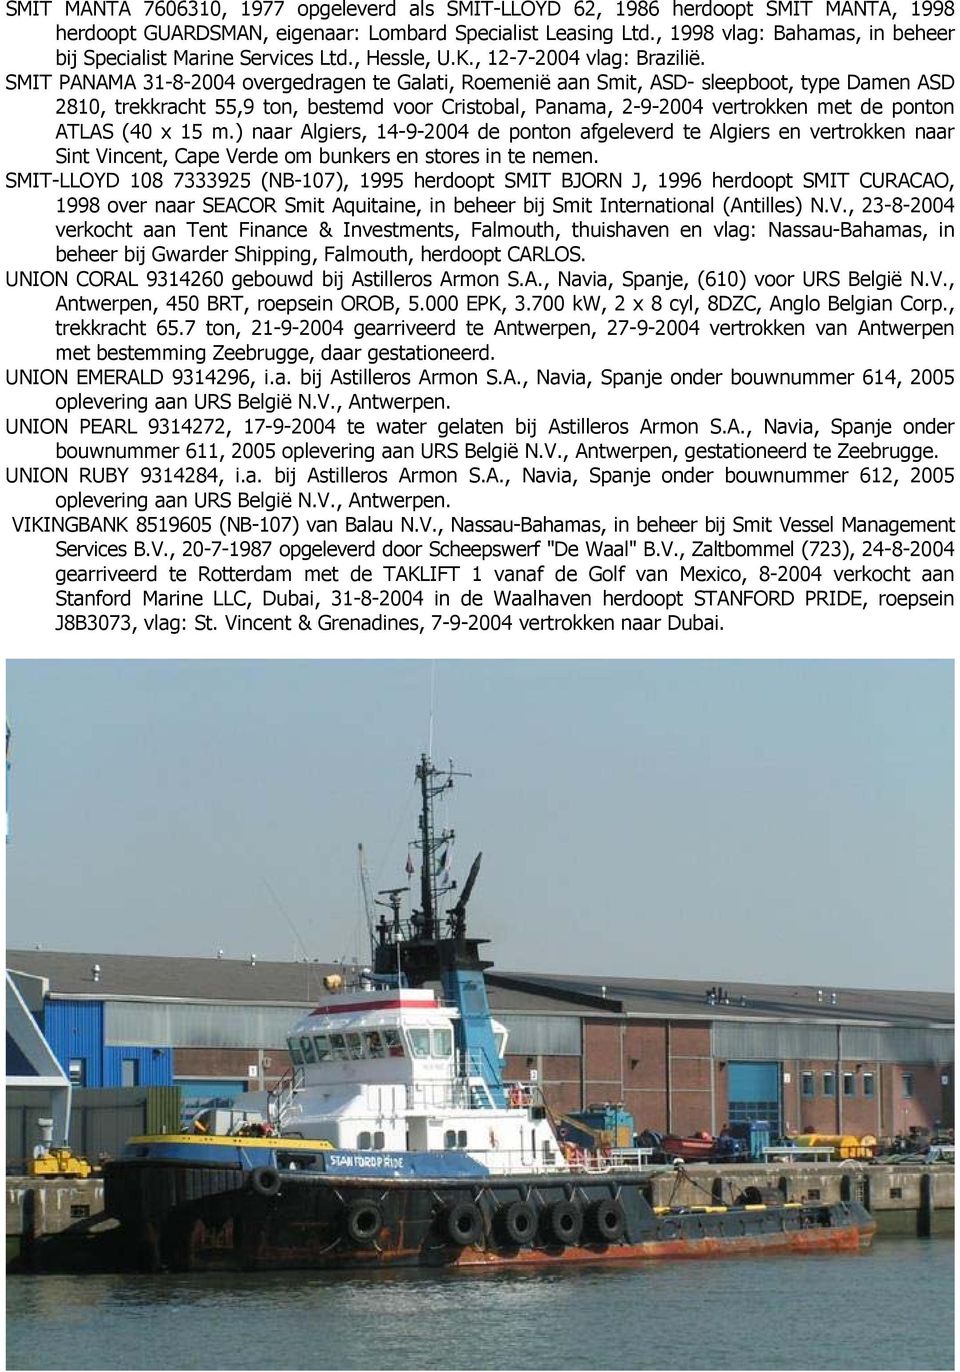 SMIT PANAMA 31-8-2004 overgedragen te Galati, Roemenië aan Smit, ASD- sleepboot, type Damen ASD 2810, trekkracht 55,9 ton, bestemd voor Cristobal, Panama, 2-9-2004 vertrokken met de ponton ATLAS (40